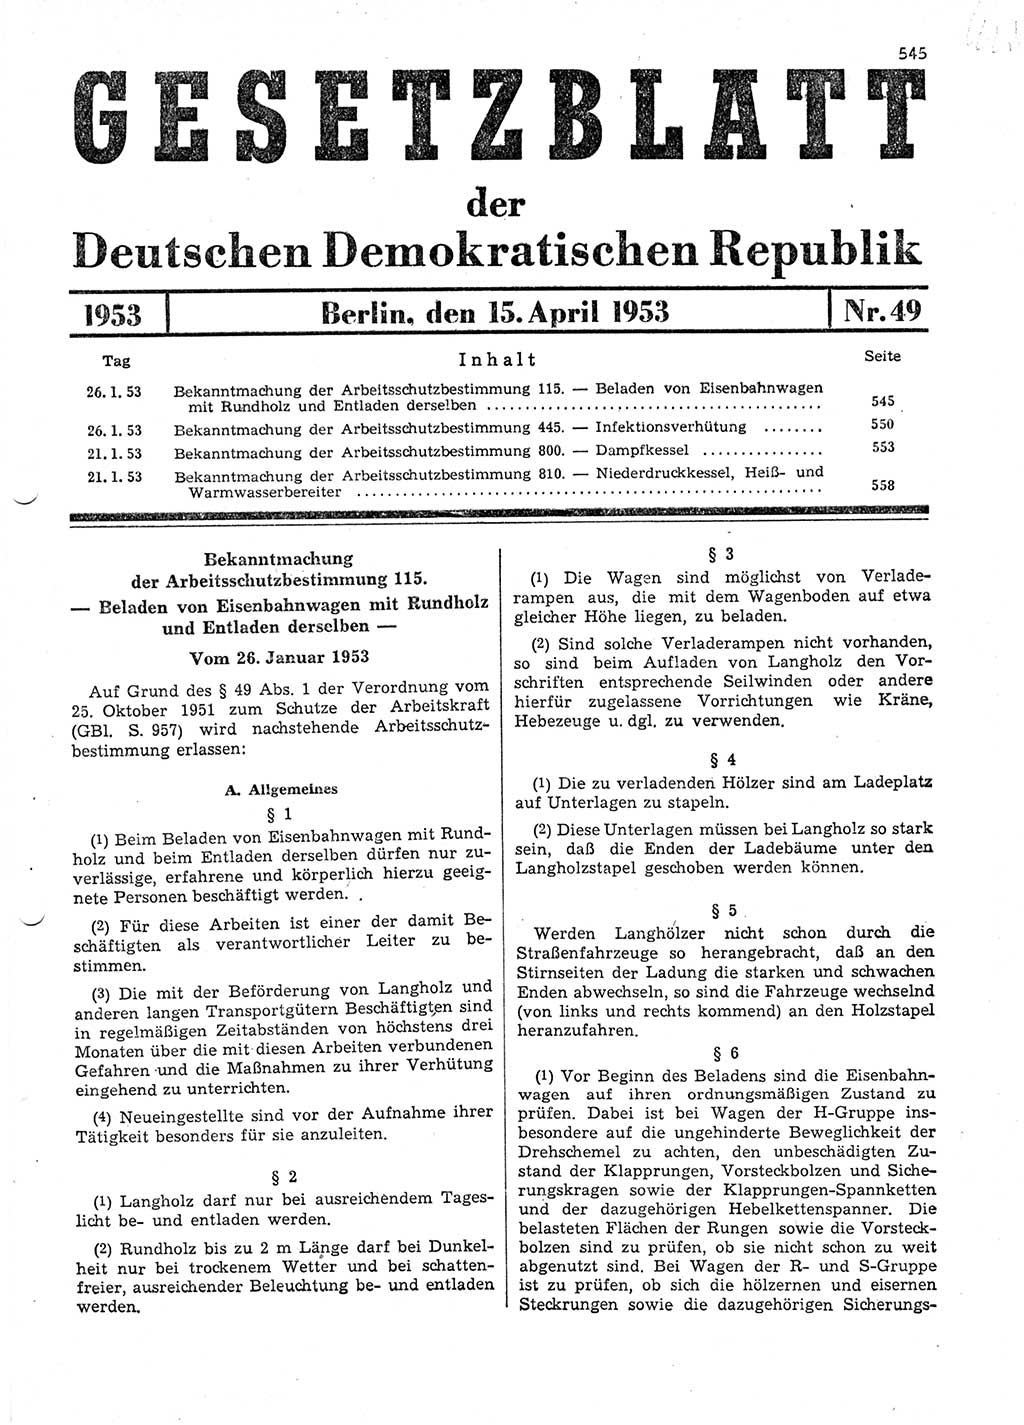 Gesetzblatt (GBl.) der Deutschen Demokratischen Republik (DDR) 1953, Seite 545 (GBl. DDR 1953, S. 545)